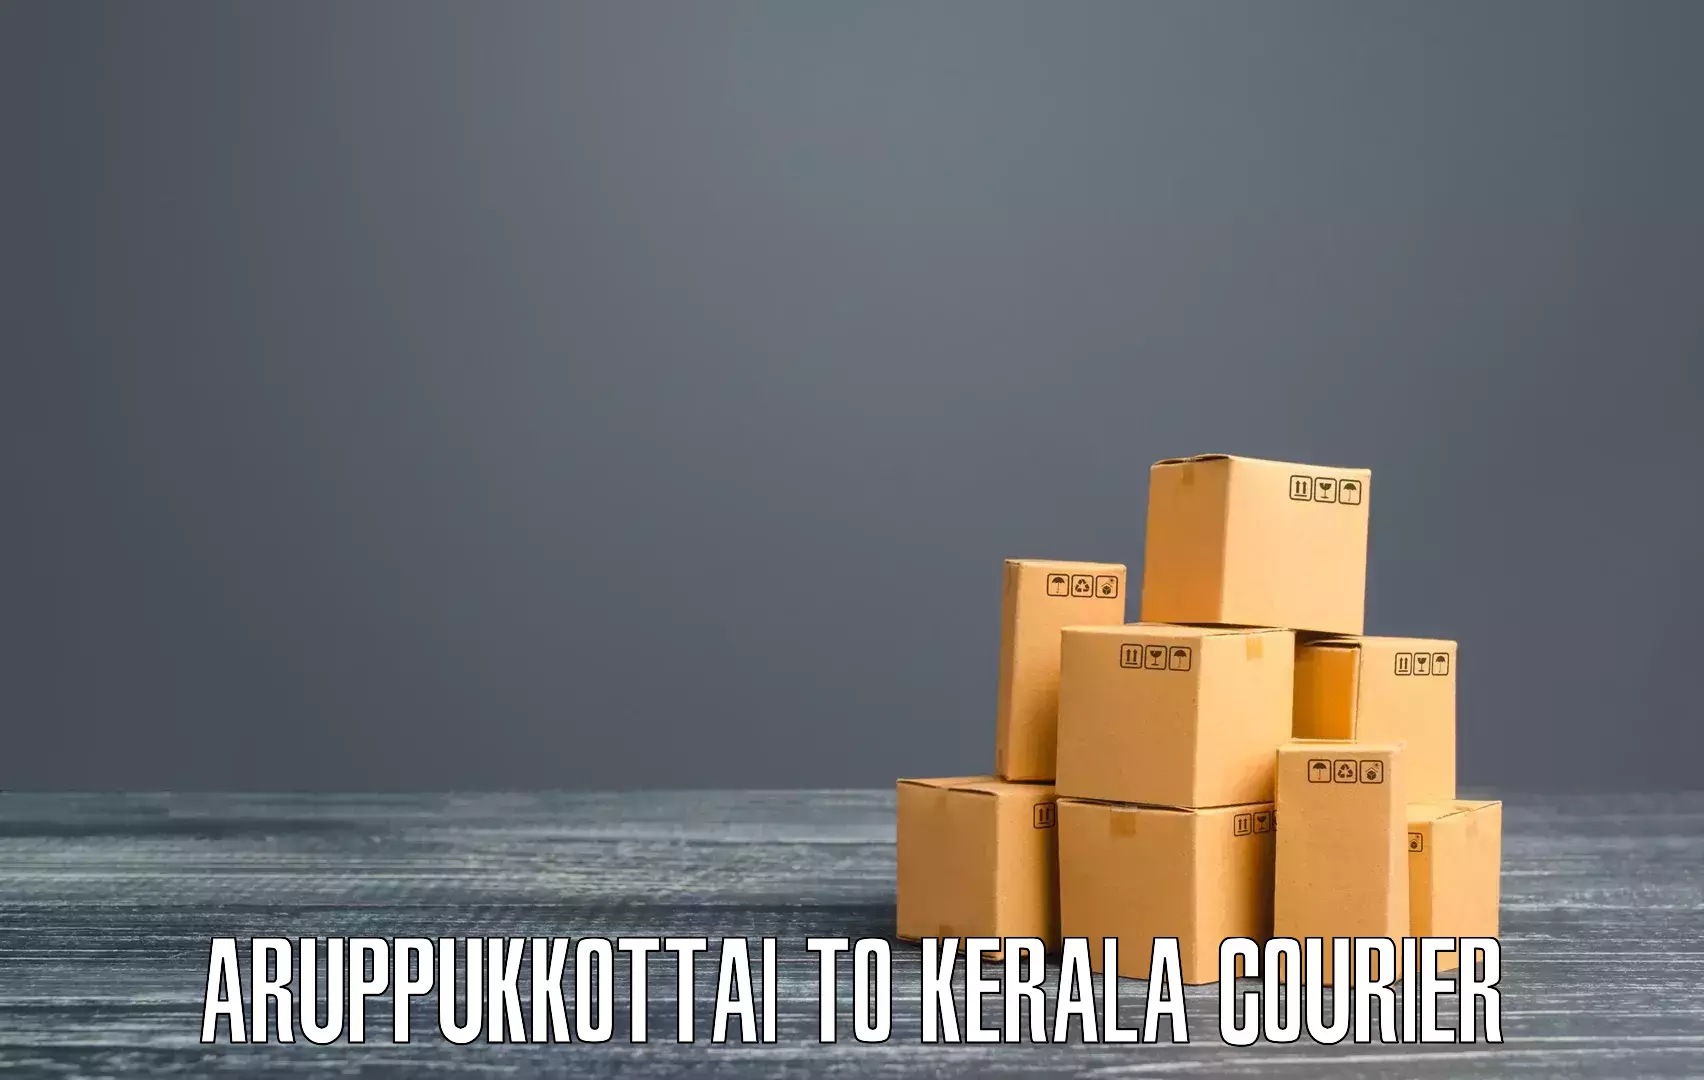 Special handling courier Aruppukkottai to Parippally